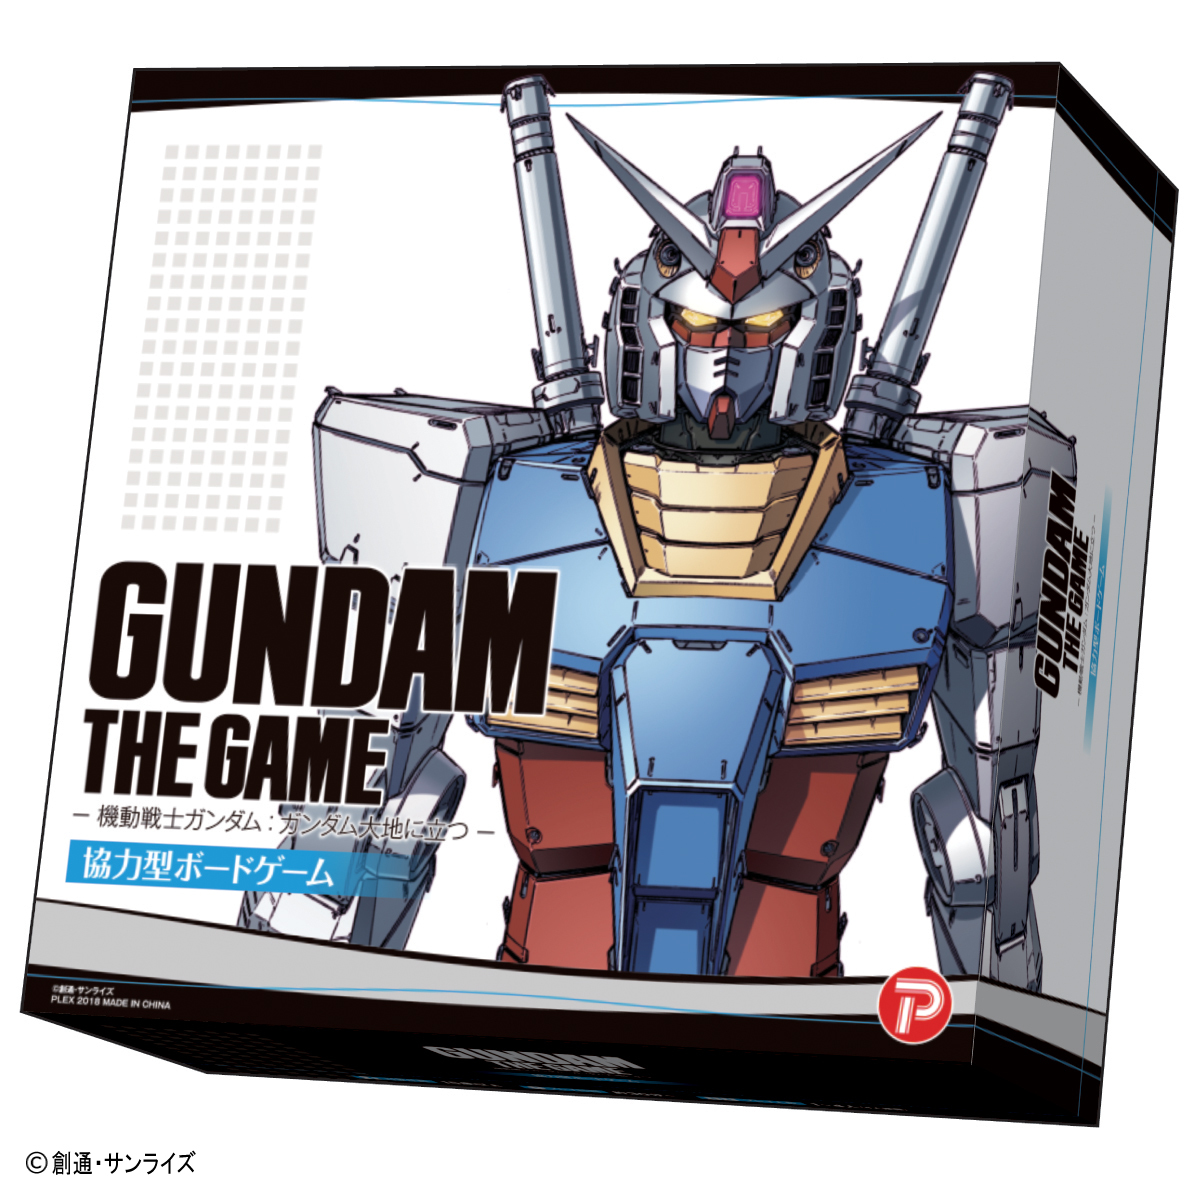 アニメ 機動戦士ガンダム のストーリーをベースにしたボードゲーム第1弾 Gundam The Game 機動戦士ガンダム ガンダム大地に立つ 登場 Game Watch